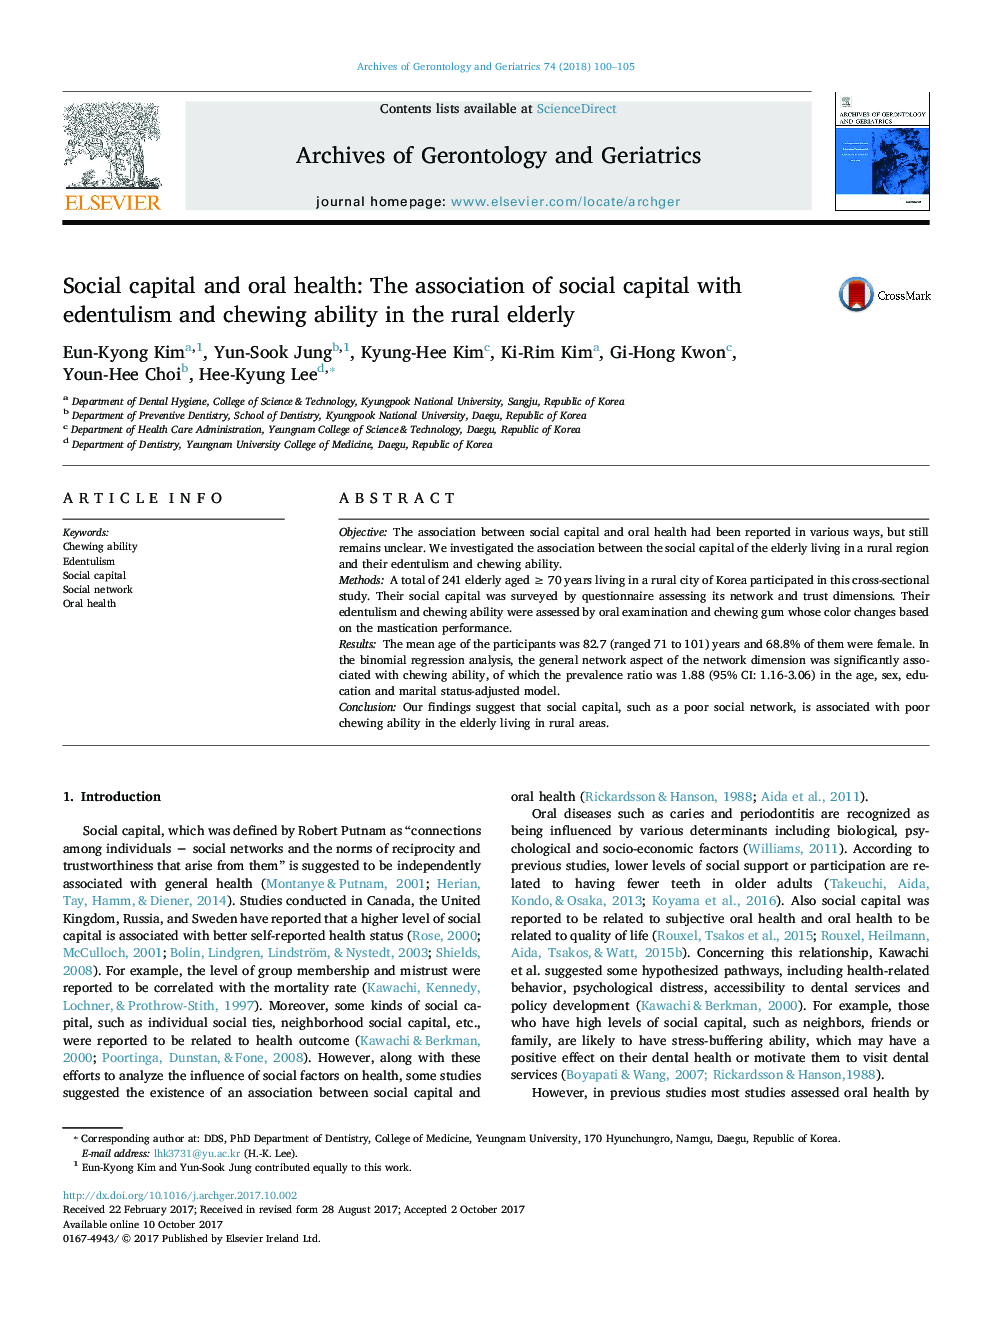 سرمایه اجتماعی و سلامت دهان: ارتباط سرمایه اجتماعی با افسردگی و توانایی جویدن در سالمندان روستایی 